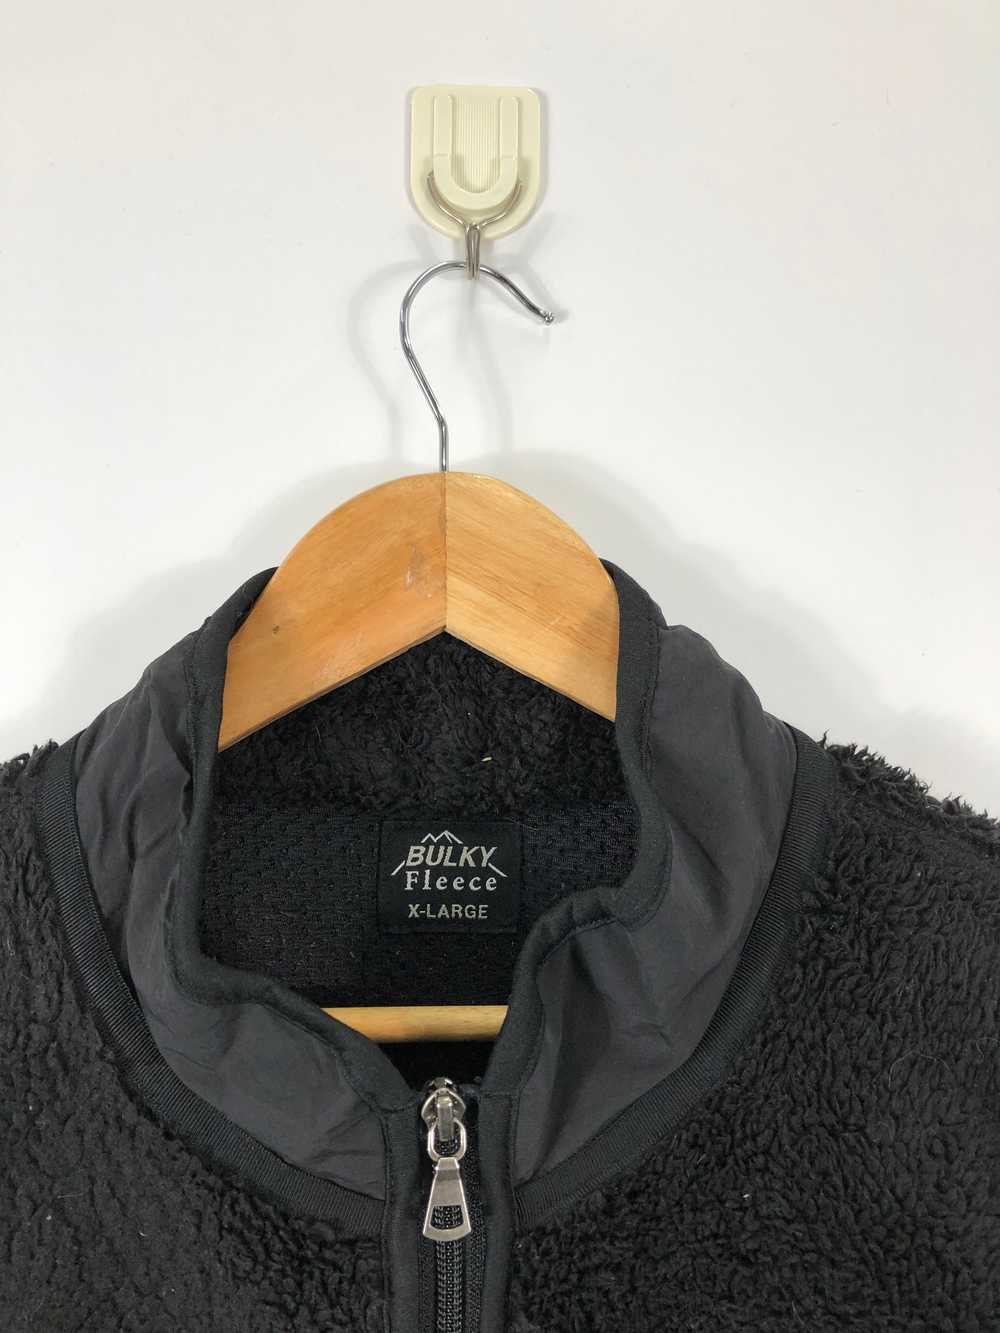 Uniqlo - Uniqlo Matted Bulky Fleece Jacket - image 5